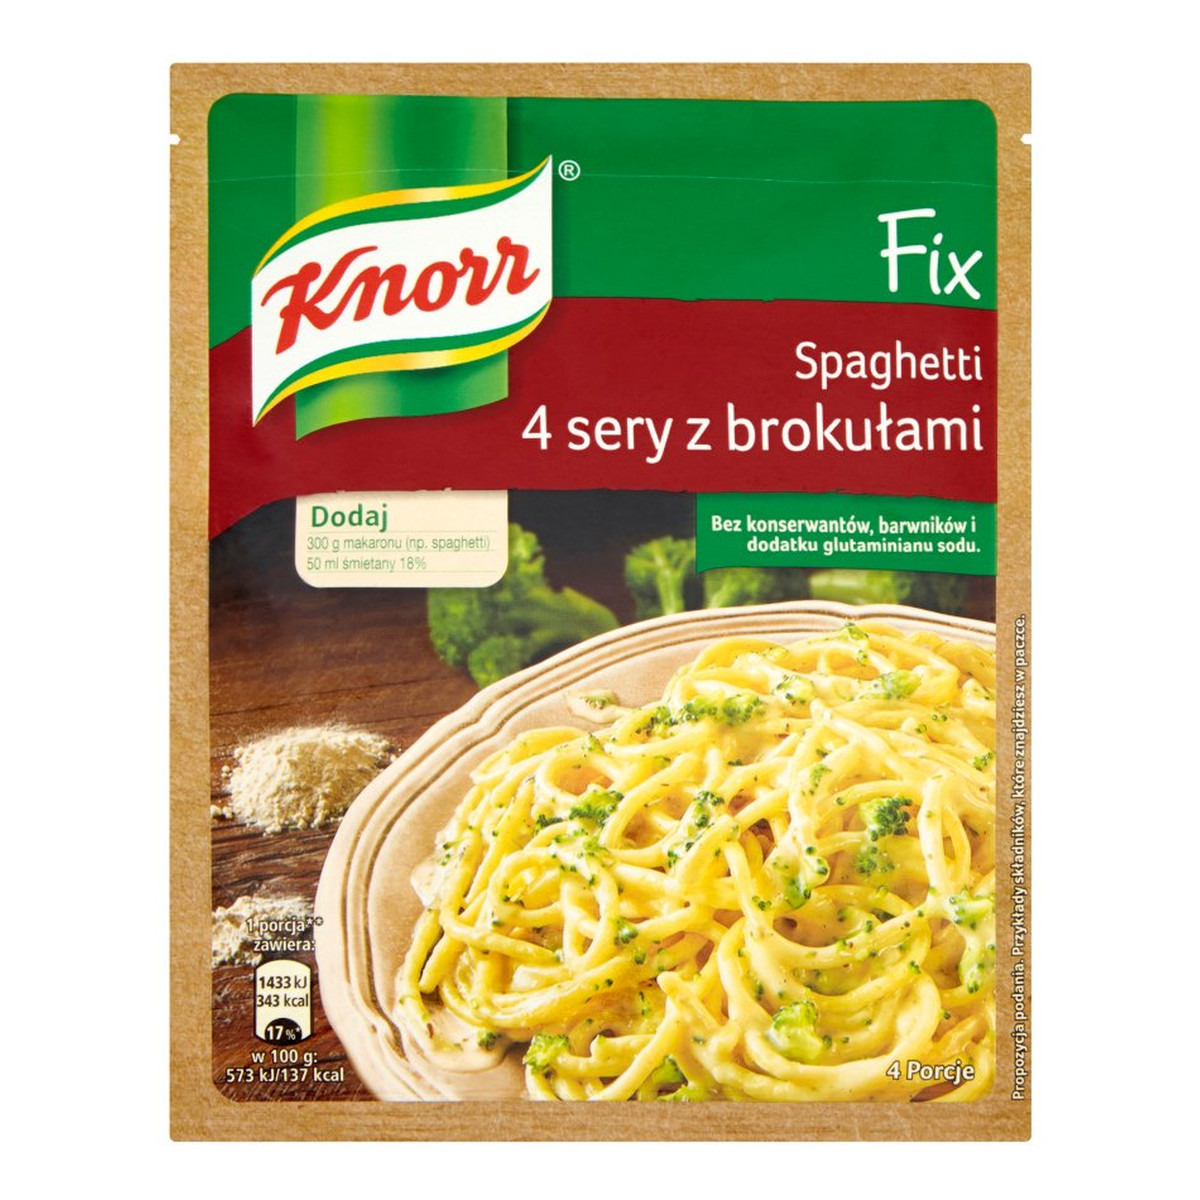 Knorr Fix Spaghetti 4 sery z brokułami 43g